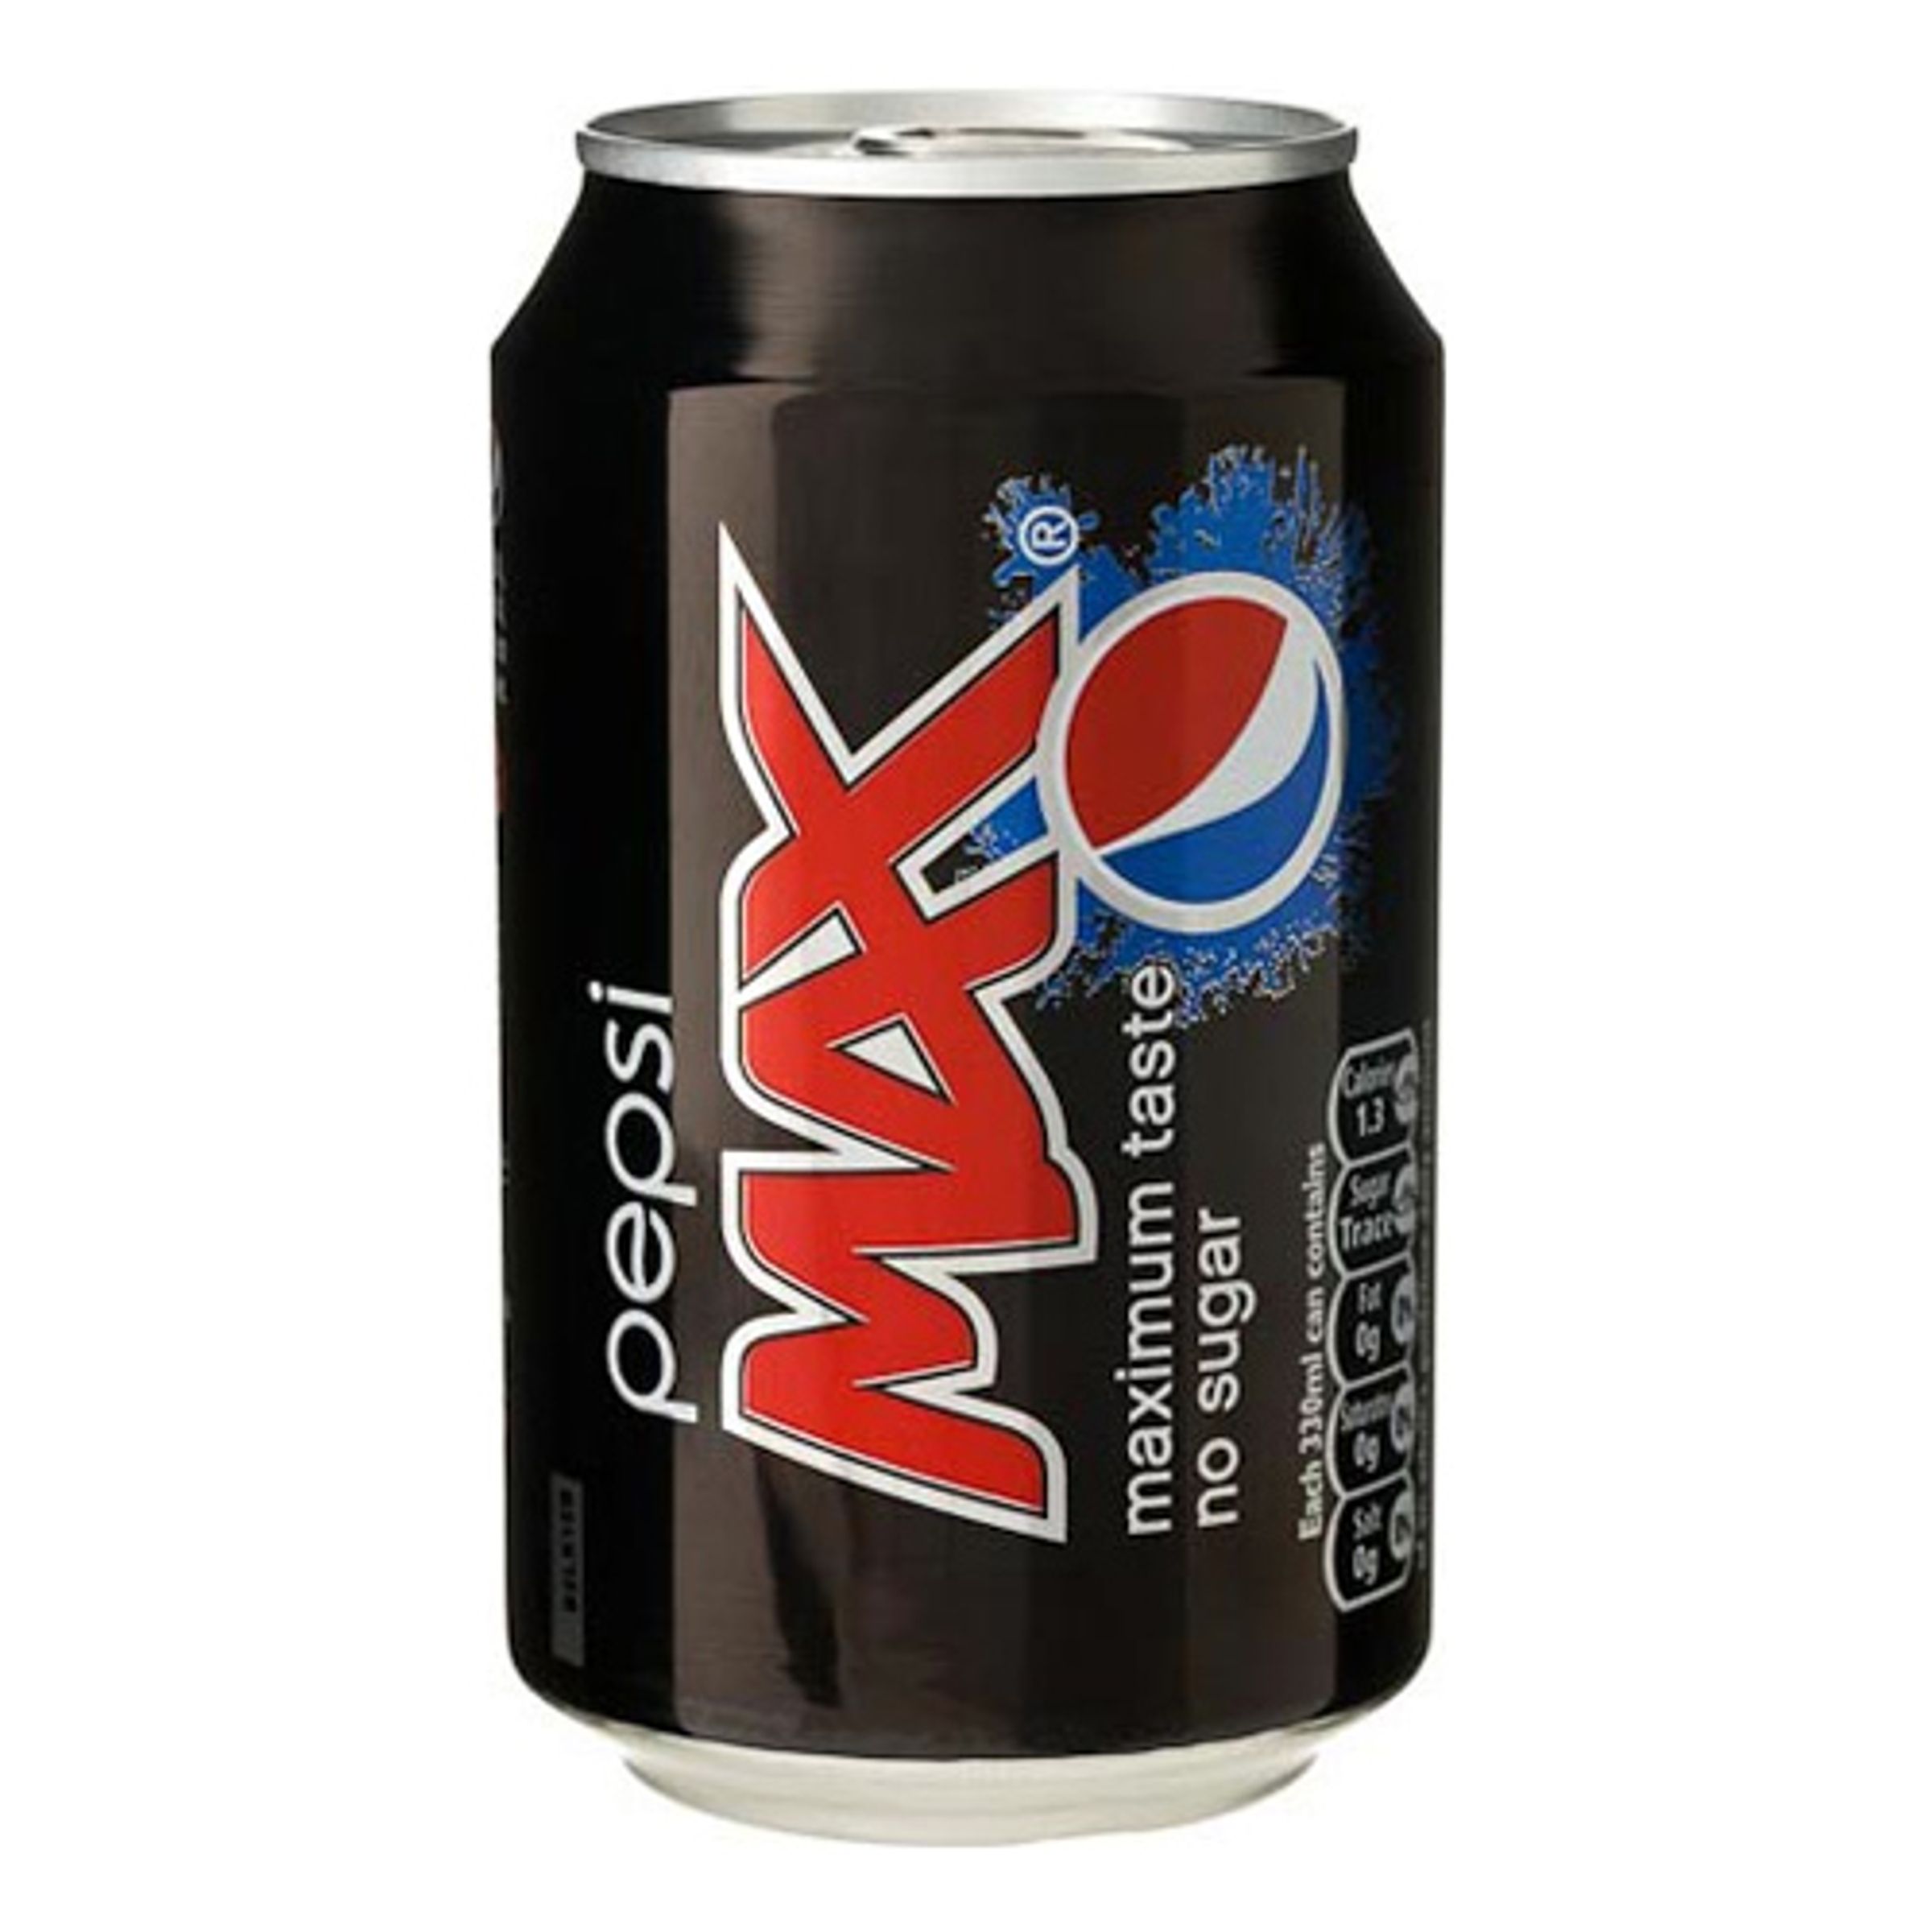 Pepsi Max - 1-pack